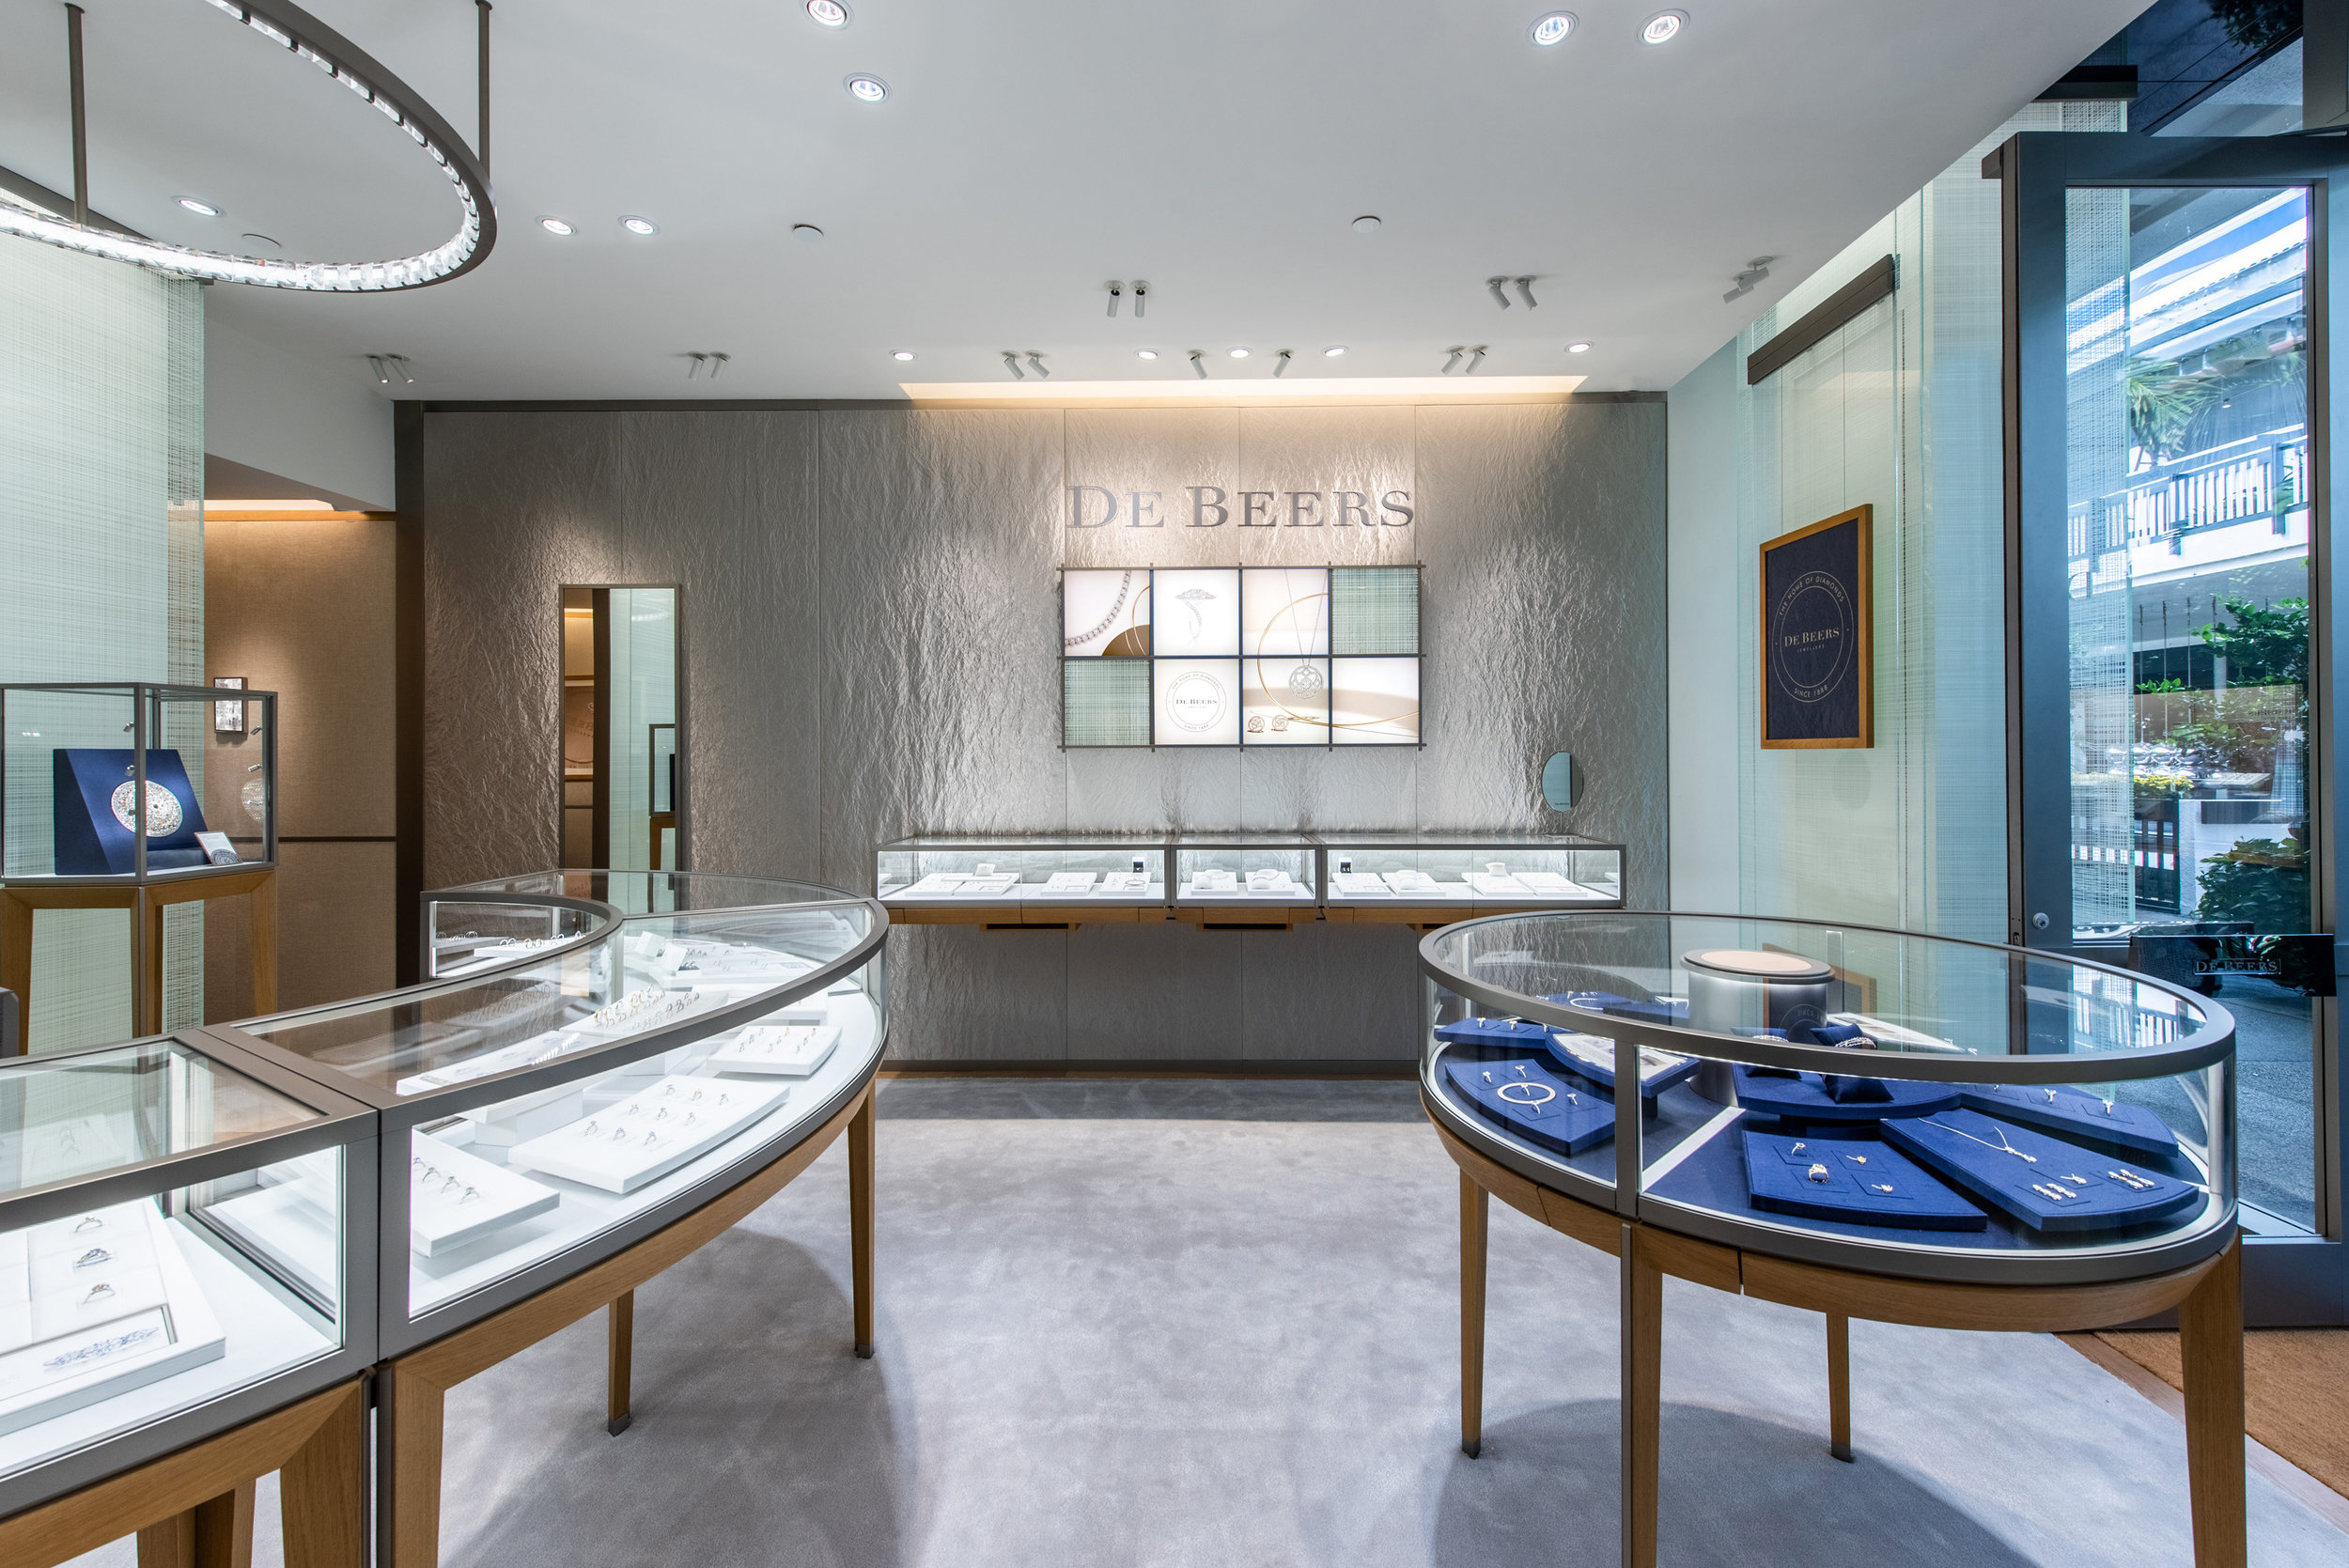 De Beers, the Legendary Home of Diamonds, Opens New Showroom At